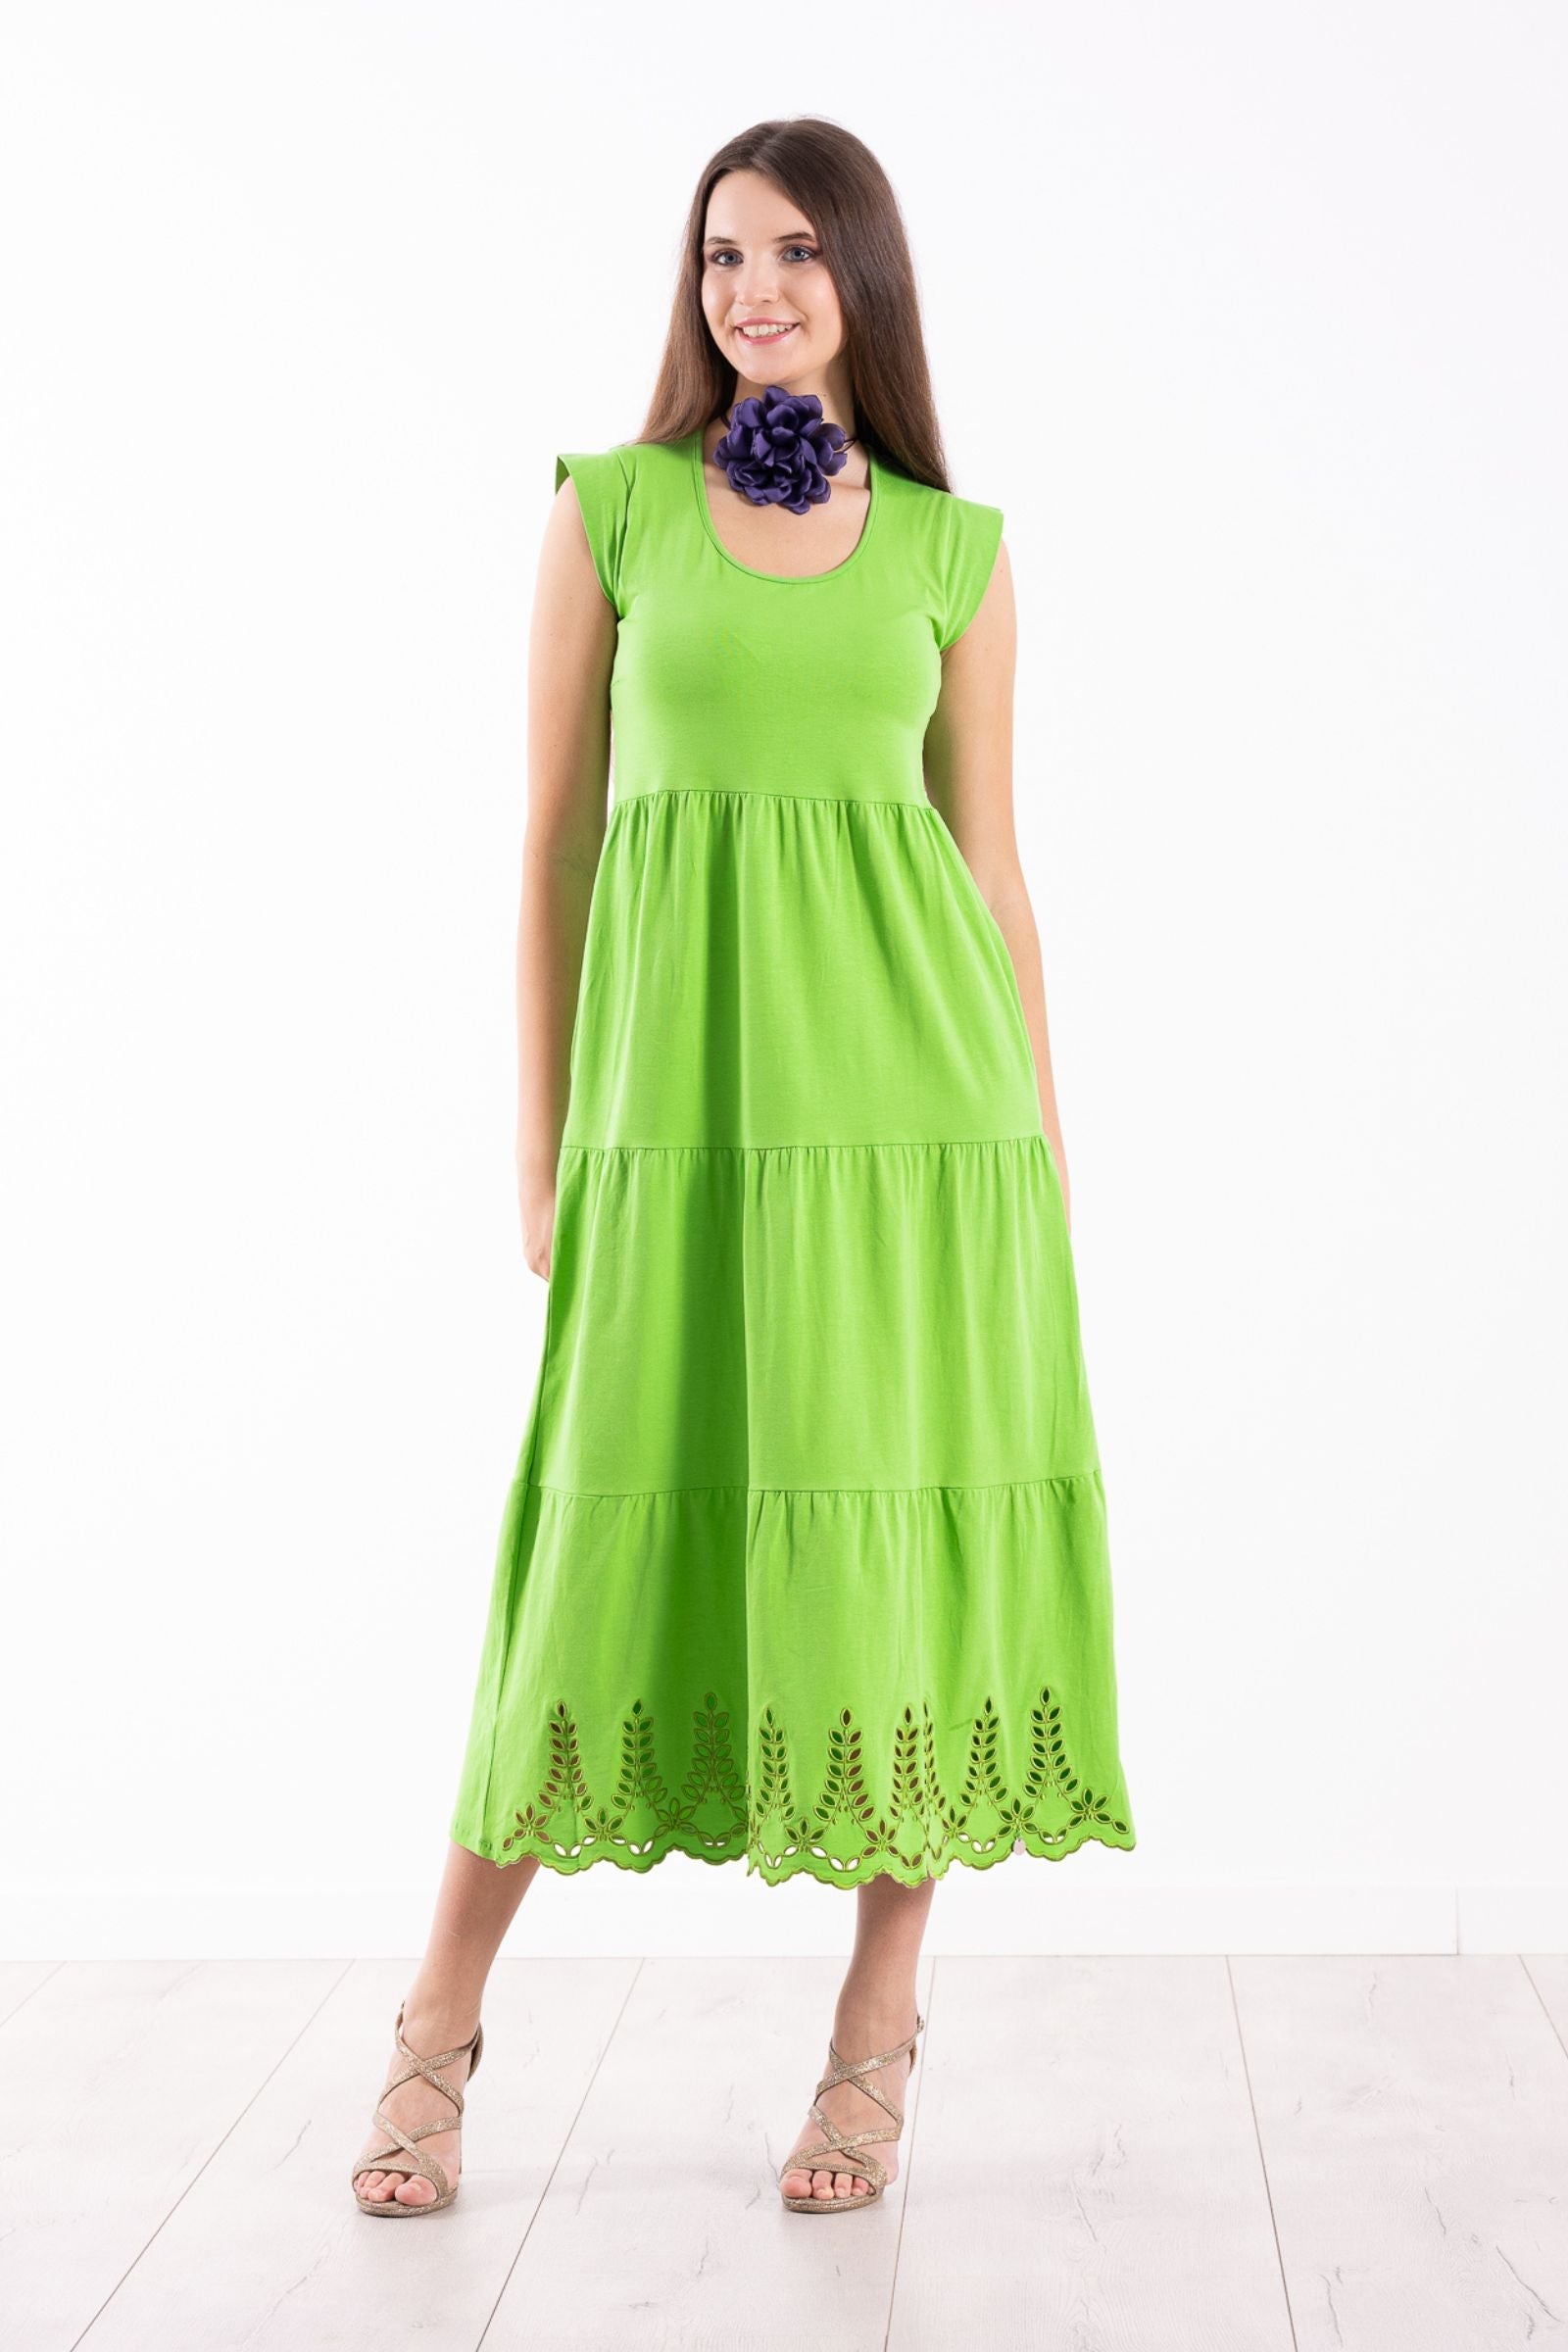 Vestido verde algodon largo con bordado al tono Lolitas&L - lolitasyl.com